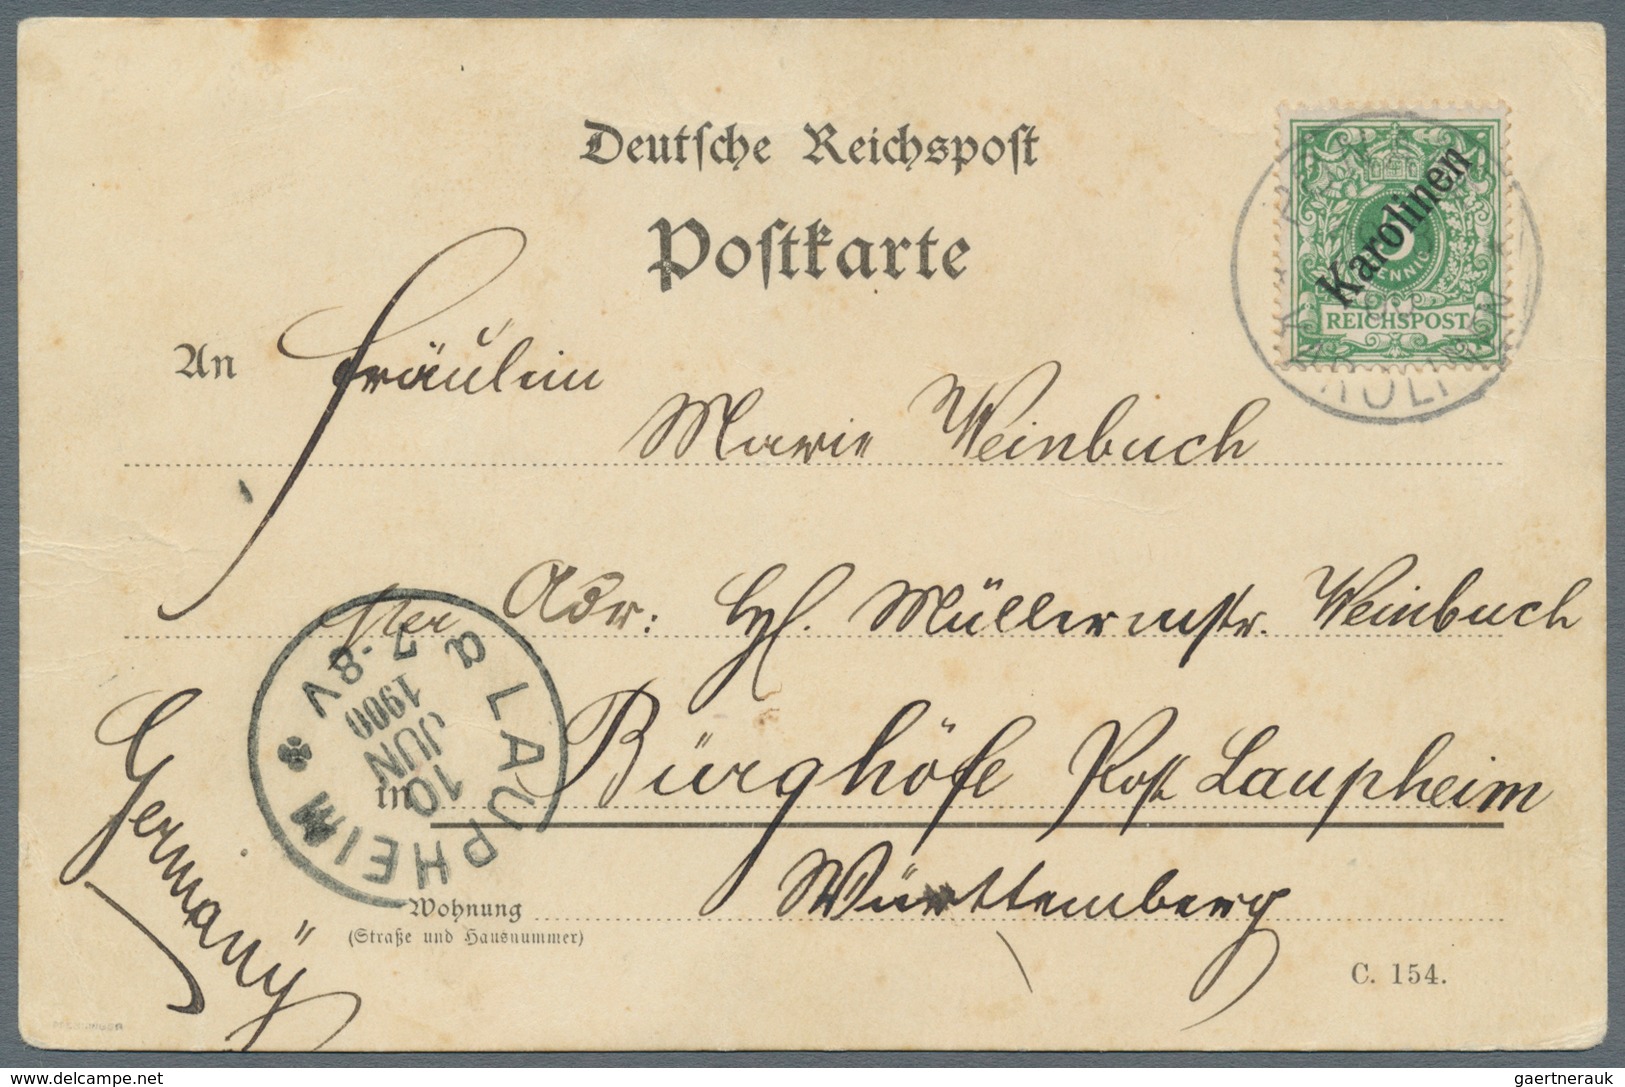 Deutsche Kolonien - Karolinen: 1899, 5 Pfg. Mit Diagonalem Aufdruck Mit Stempel "PONAPE KAROLINEN 29 - Karolinen